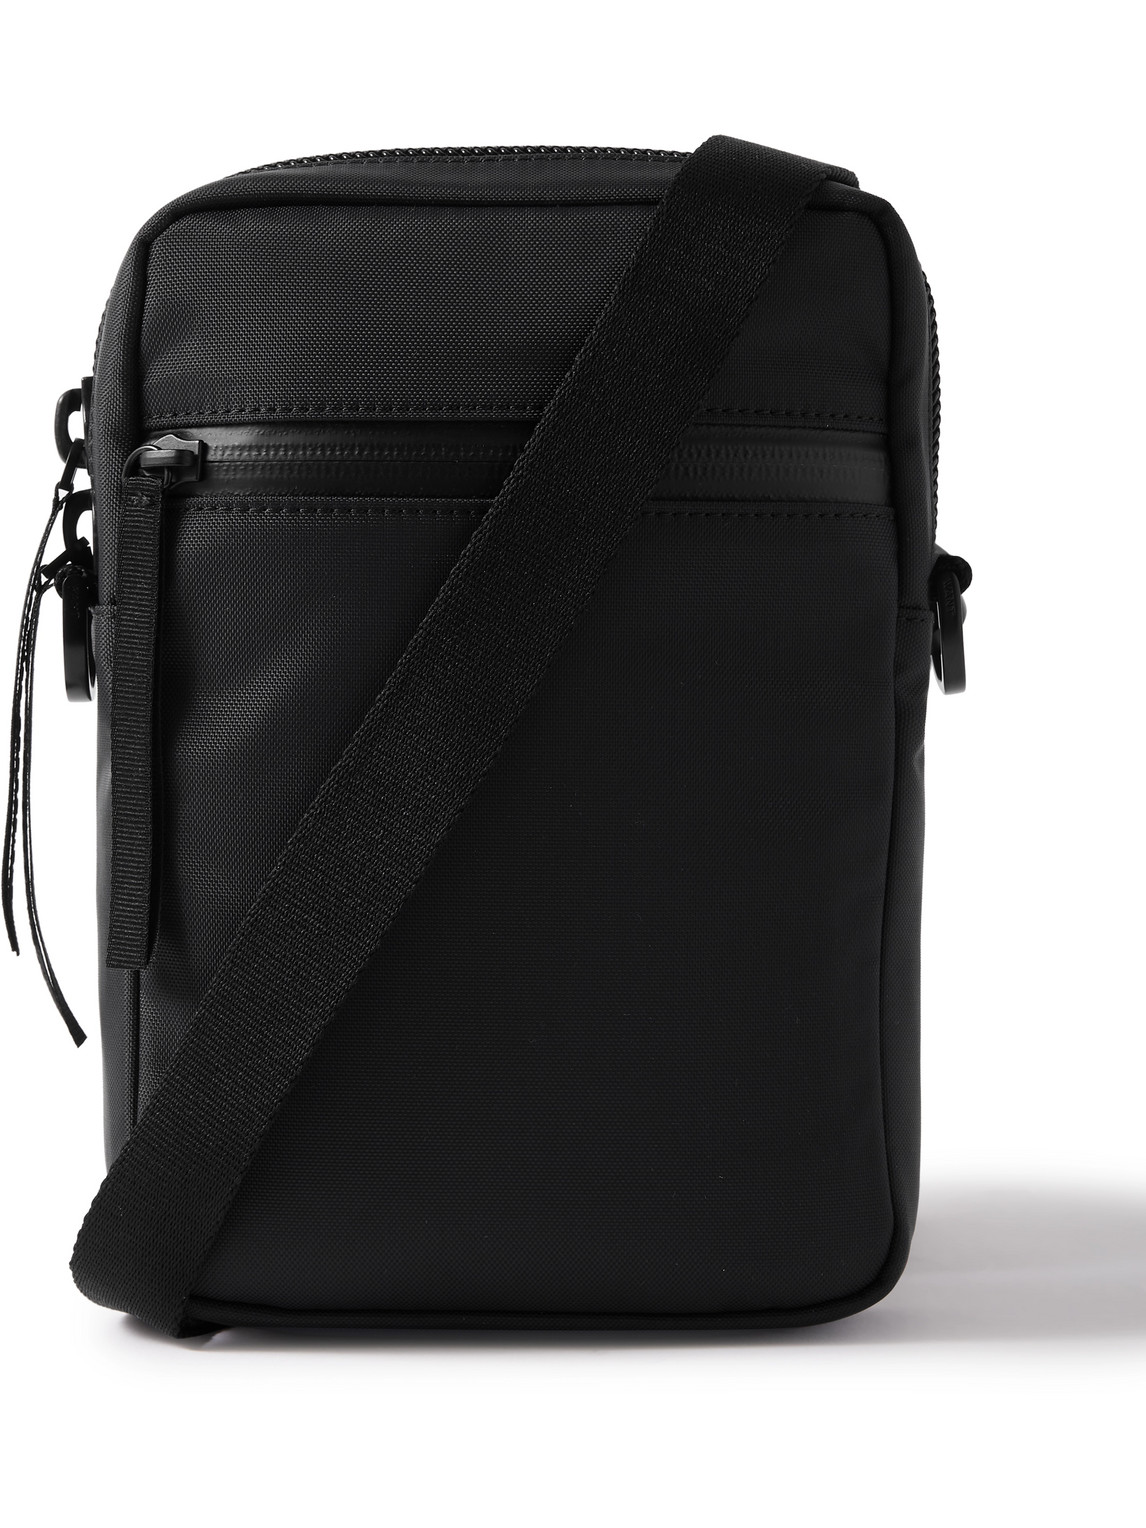 Want Les Essentiels De La Vie Econyl Messenger Bag In Black